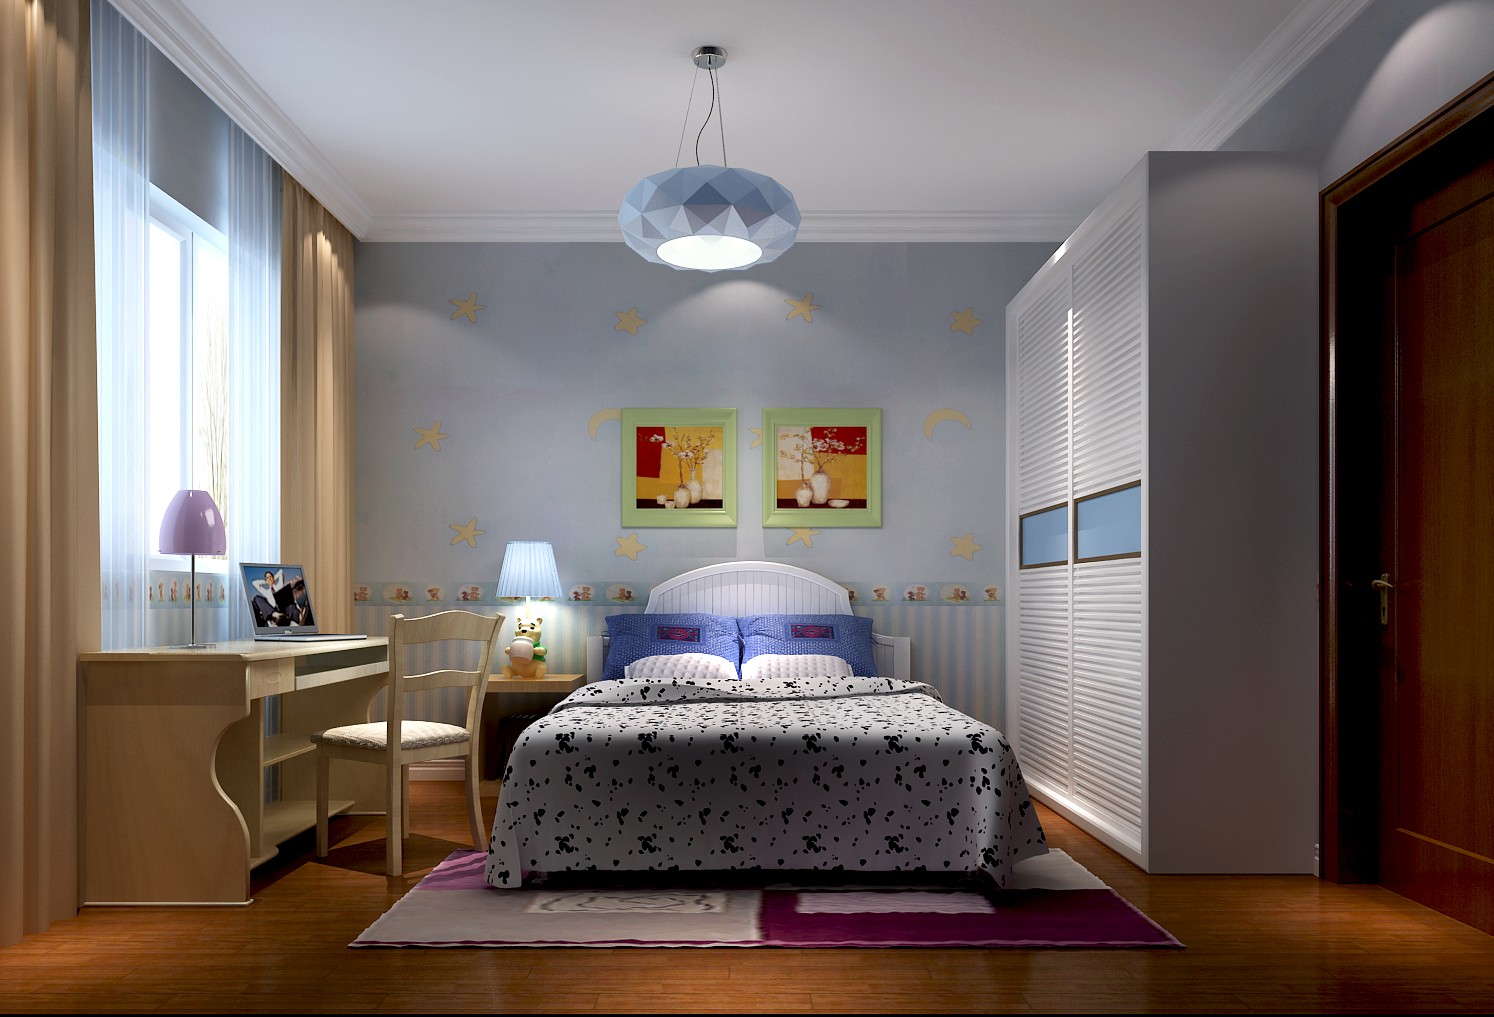 简约 欧式 公寓 高度国际 高富帅 卧室图片来自重庆高度国际装饰工程有限公司在香悦四季-简欧风格的分享